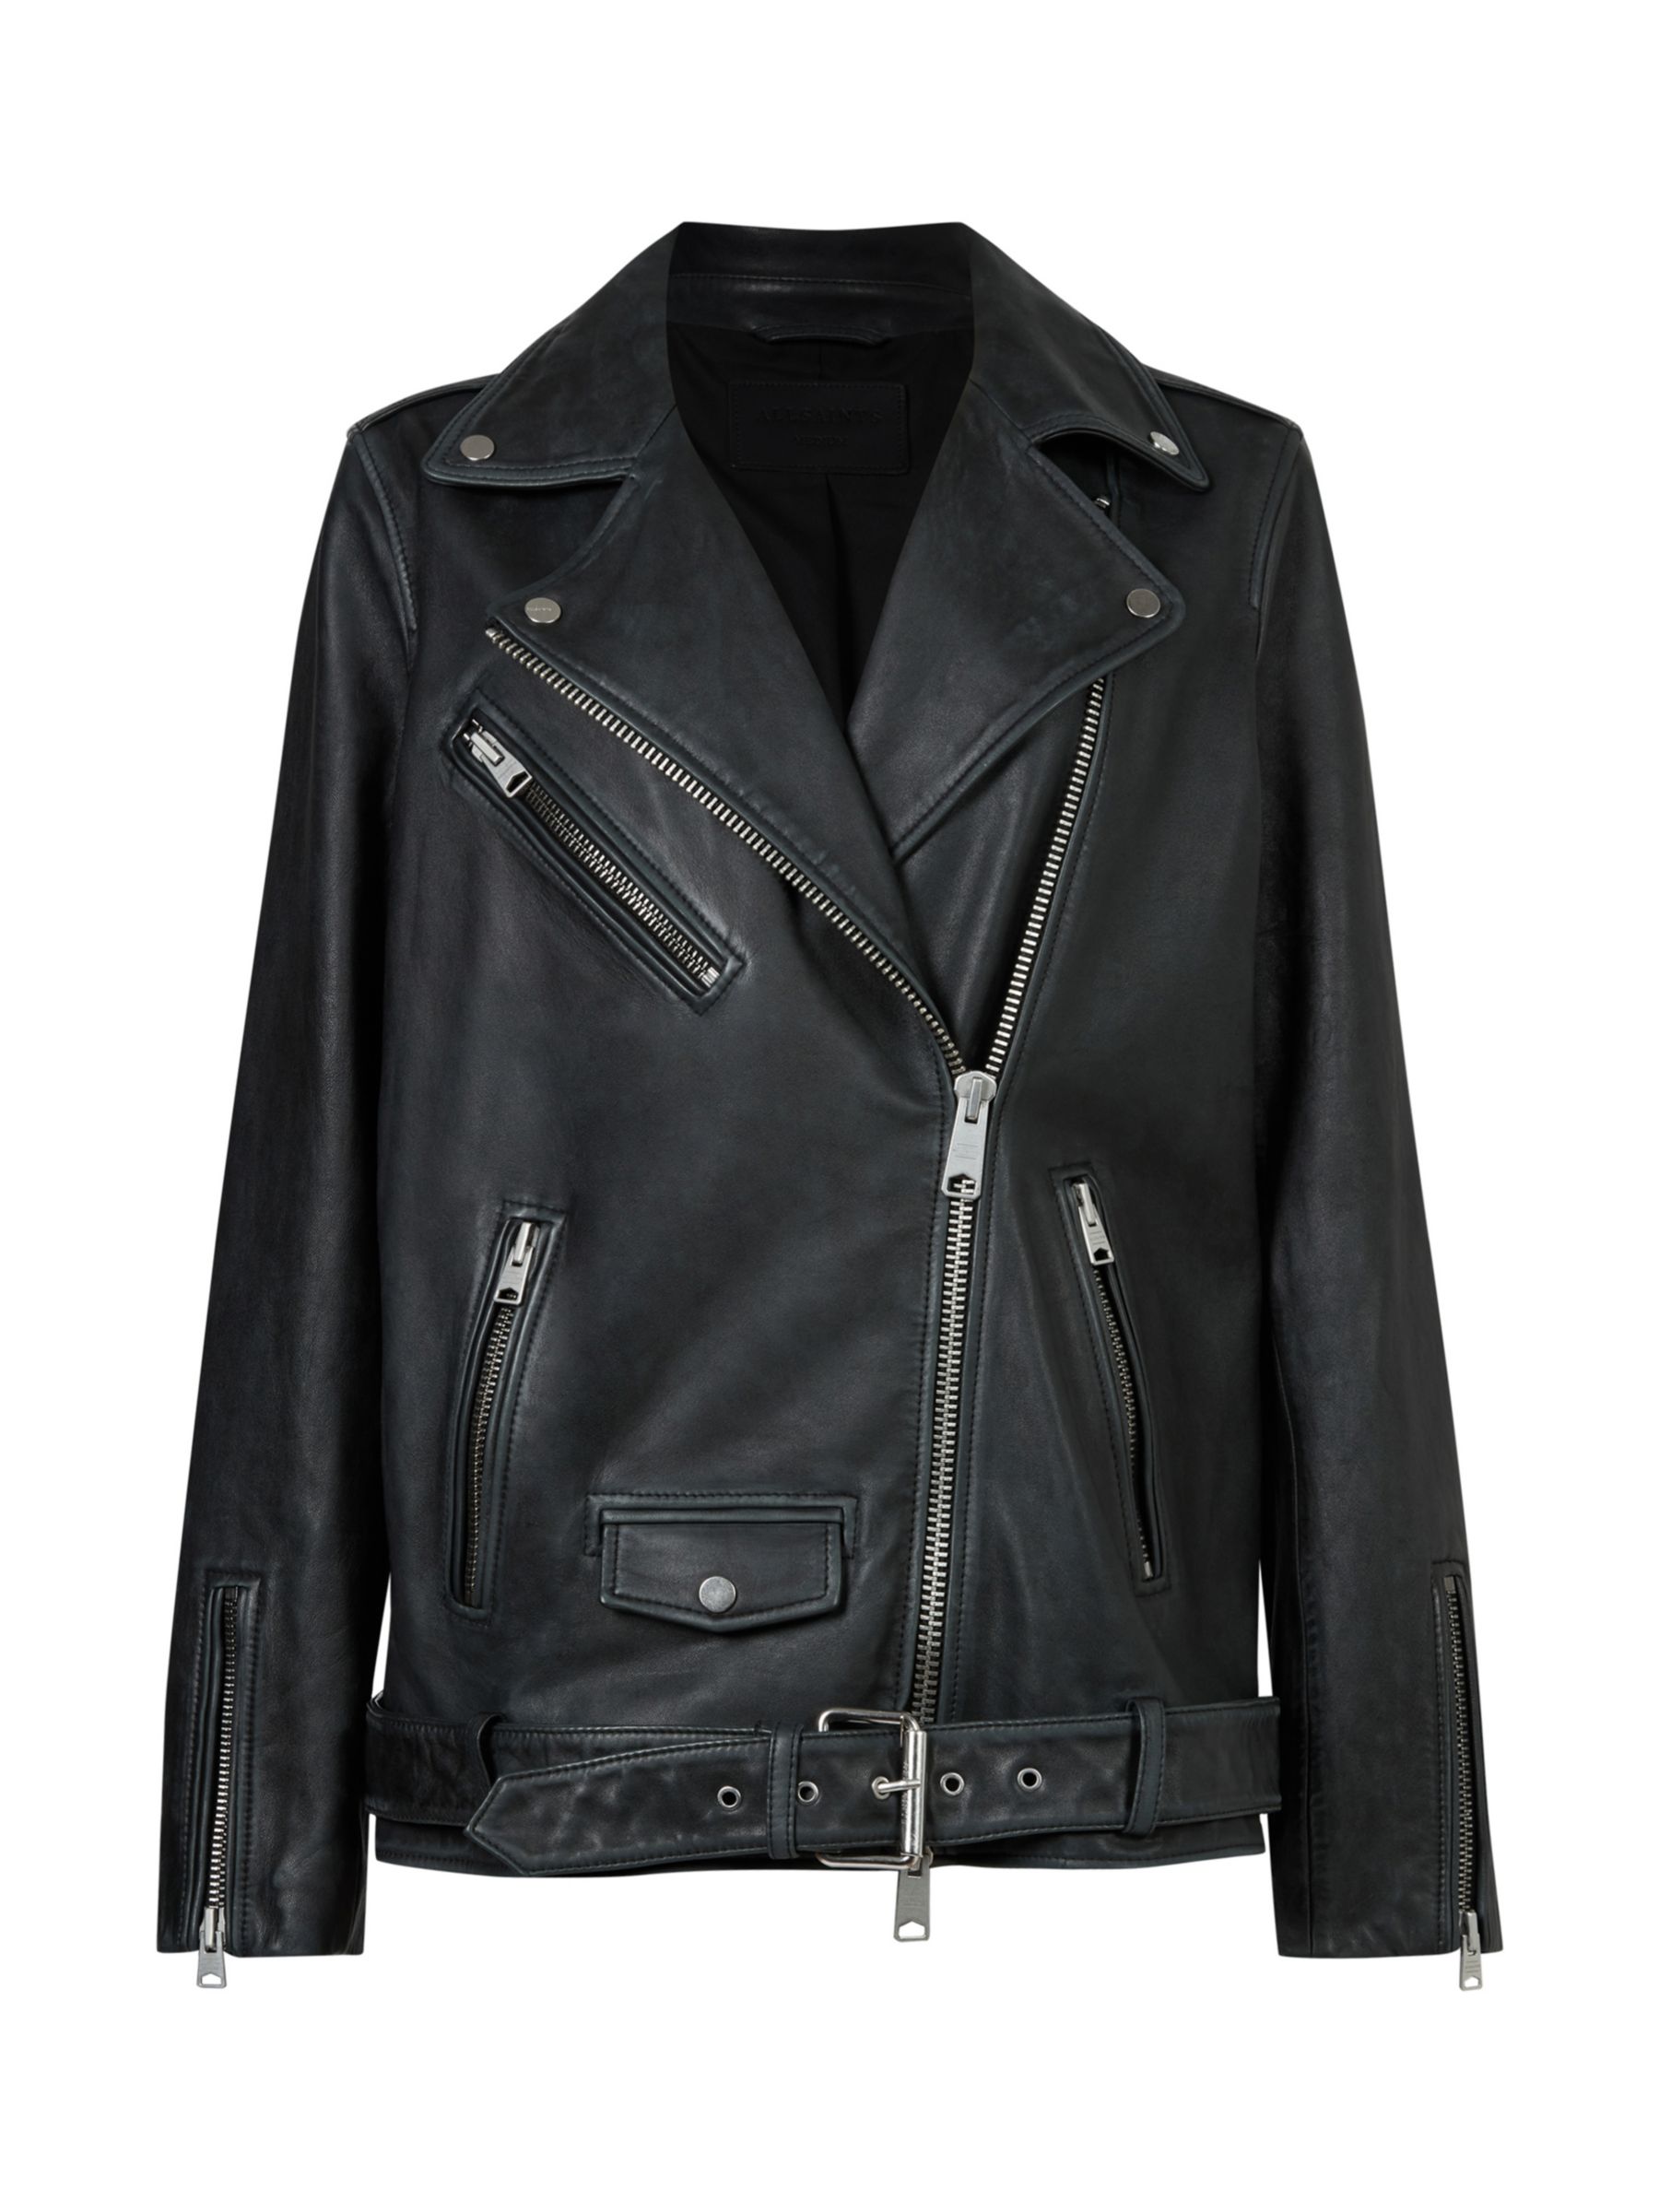 AllSaints Billie Leather Biker Jacket, Black/Silver Studs at John Lewis ...